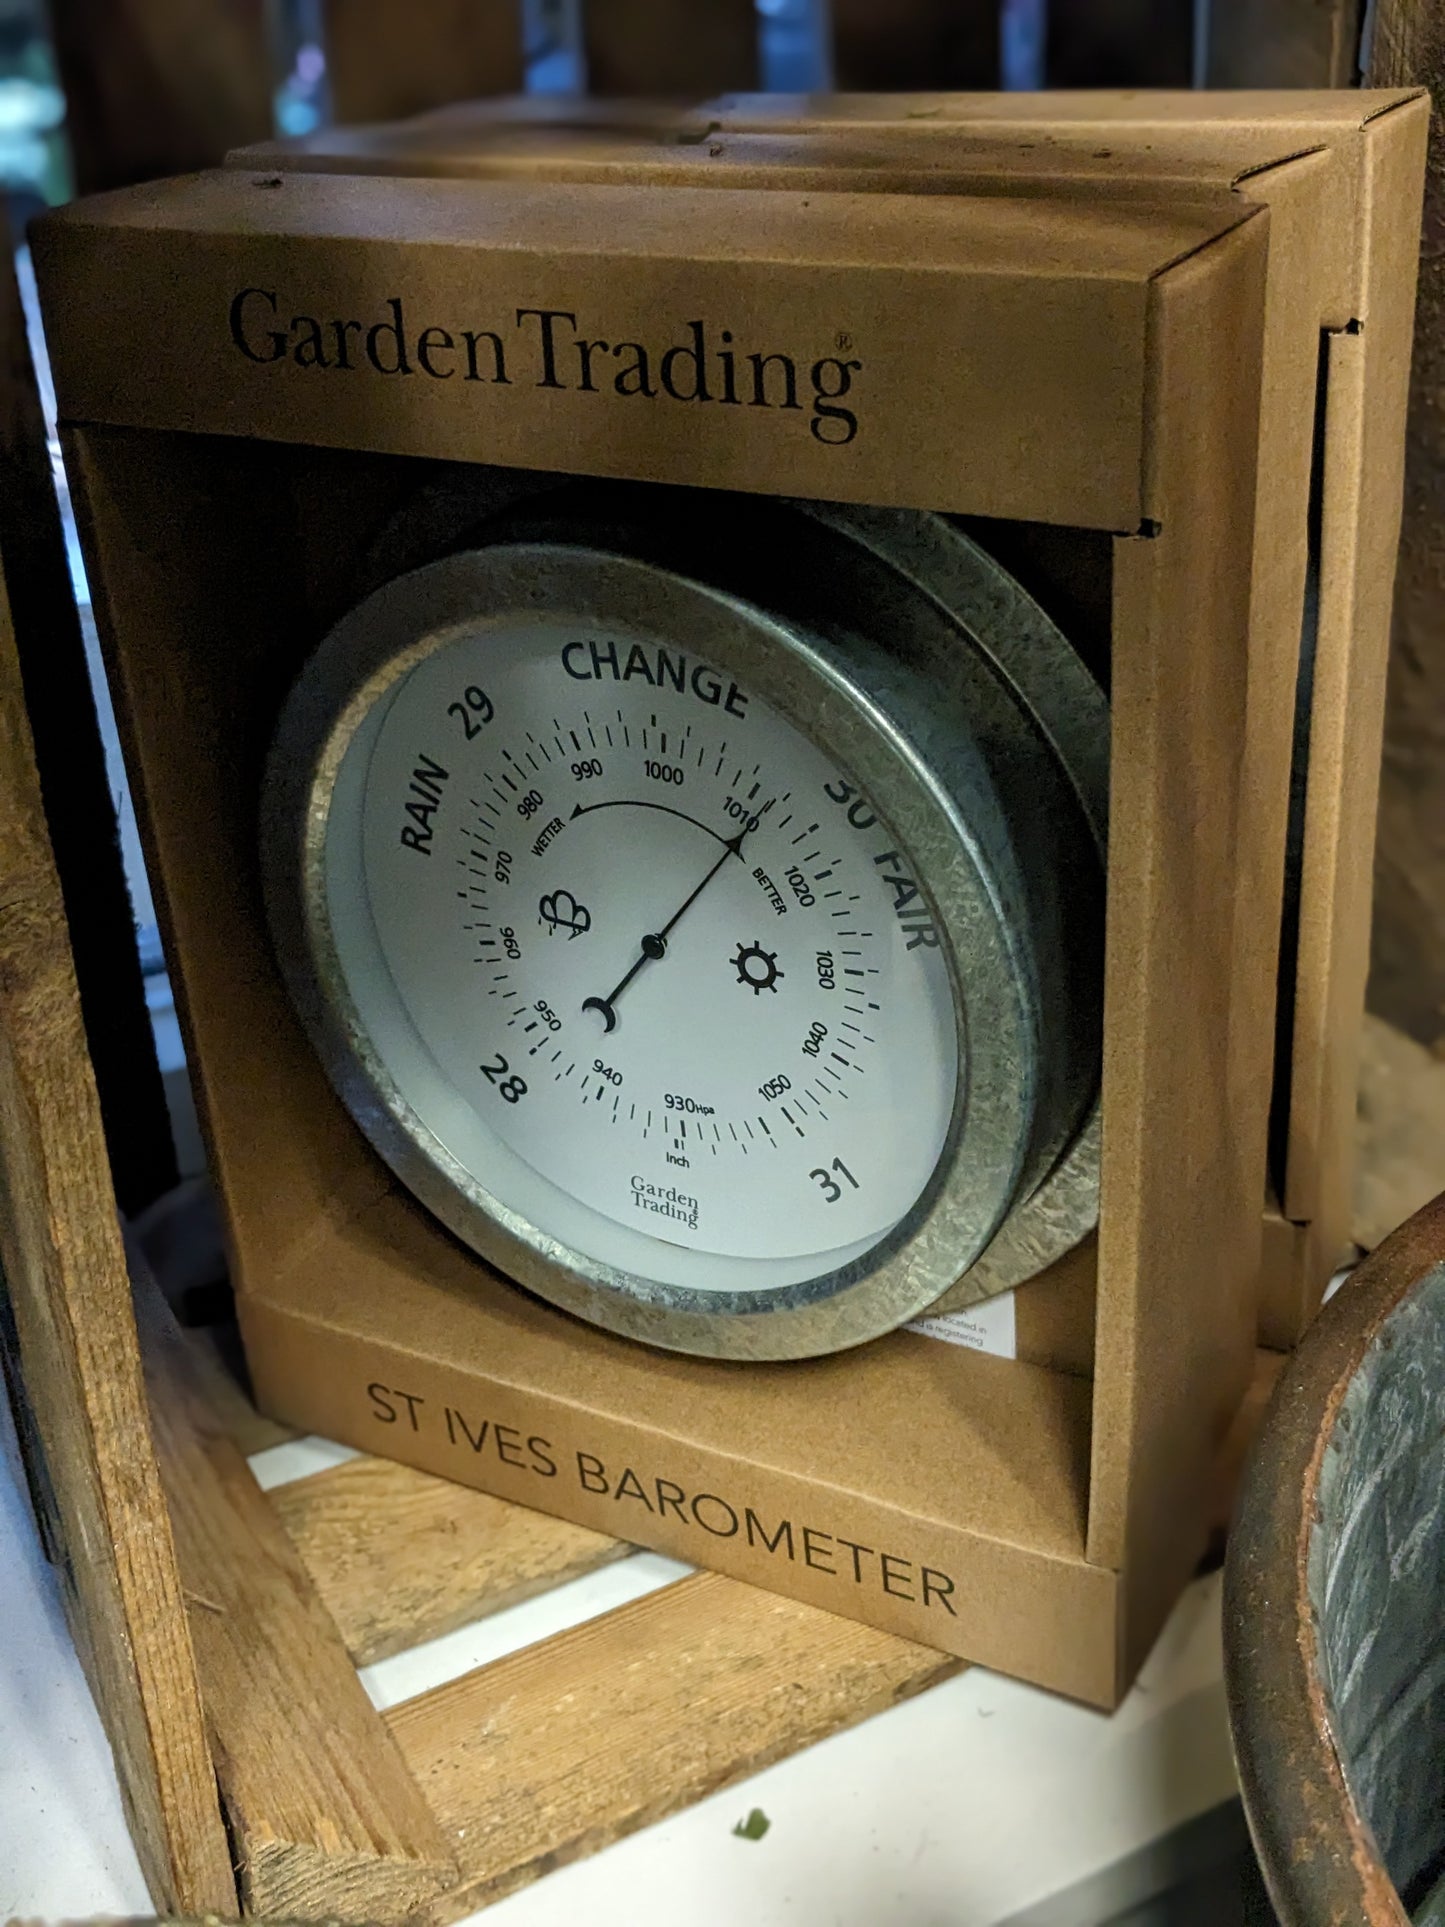 St.Ives Barometer